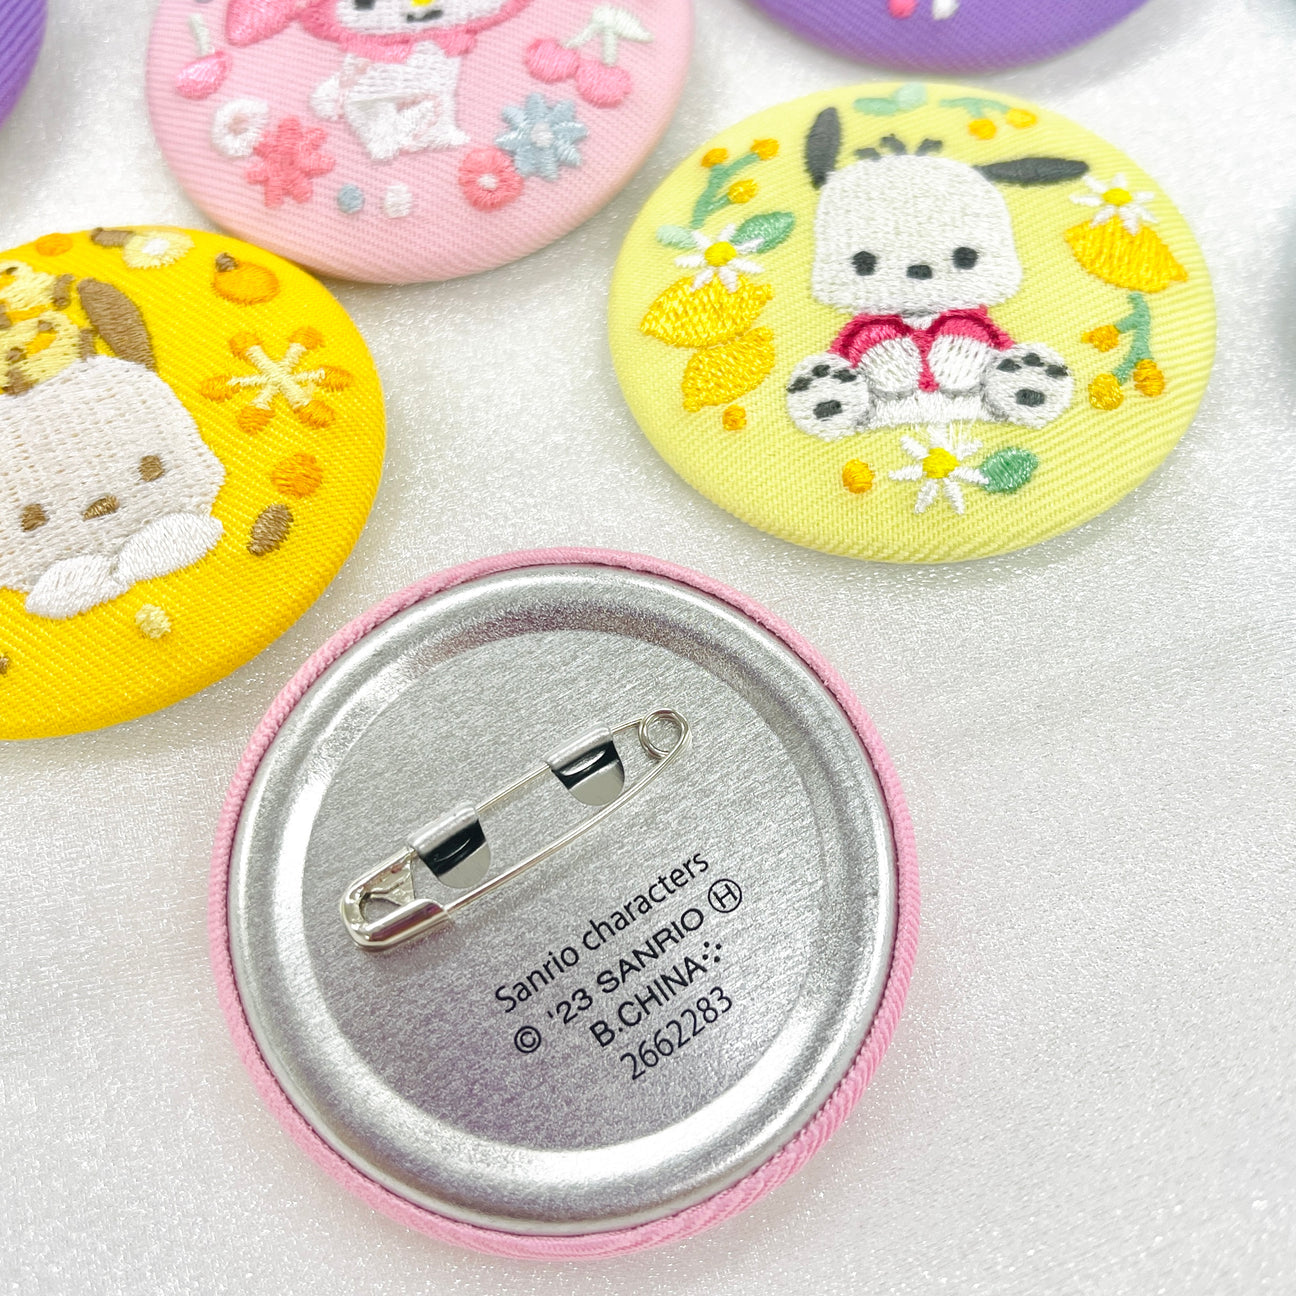 三丽鸥刺绣吧唧盲盒Sanrio Characters Embordiery Button Pin